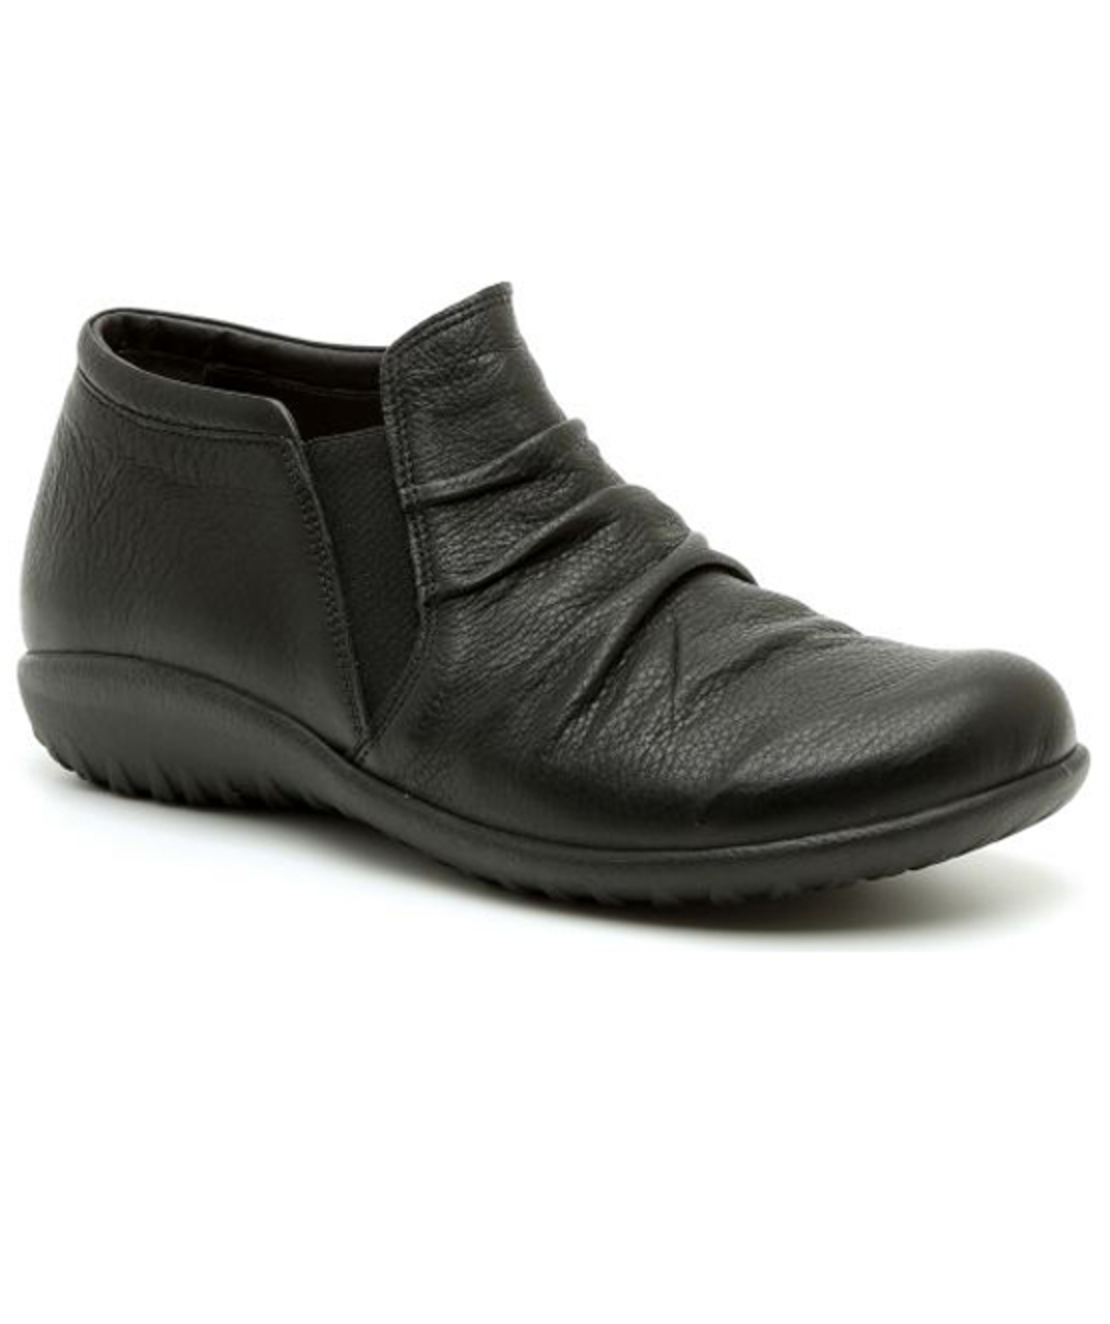 Tarho - Teva Naot Boots - Women